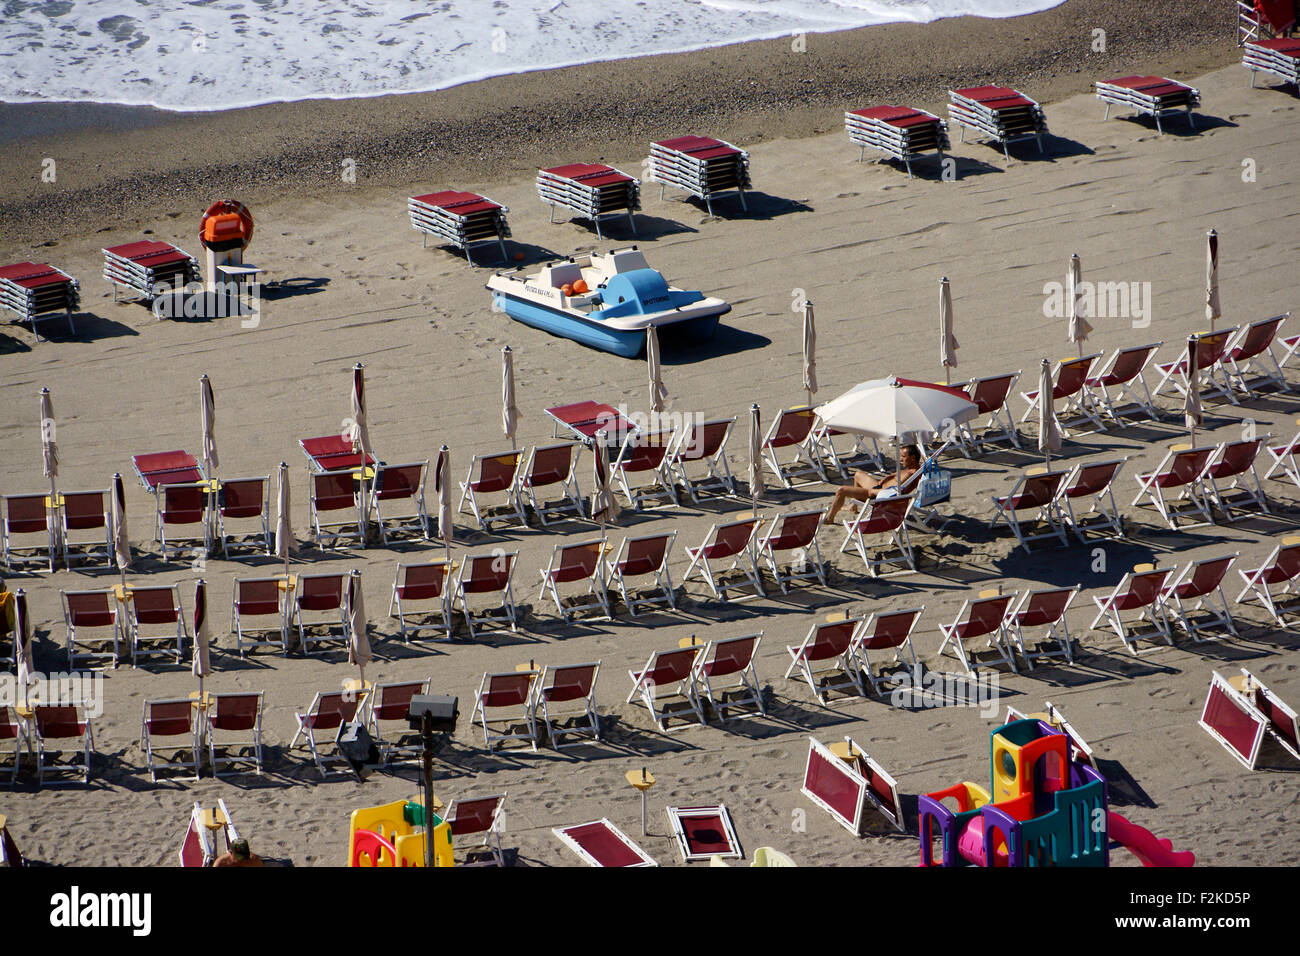 Righe di sdraio sulla spiaggia, Riviera di Ponente a Spotorno Liguria, Italia Foto Stock